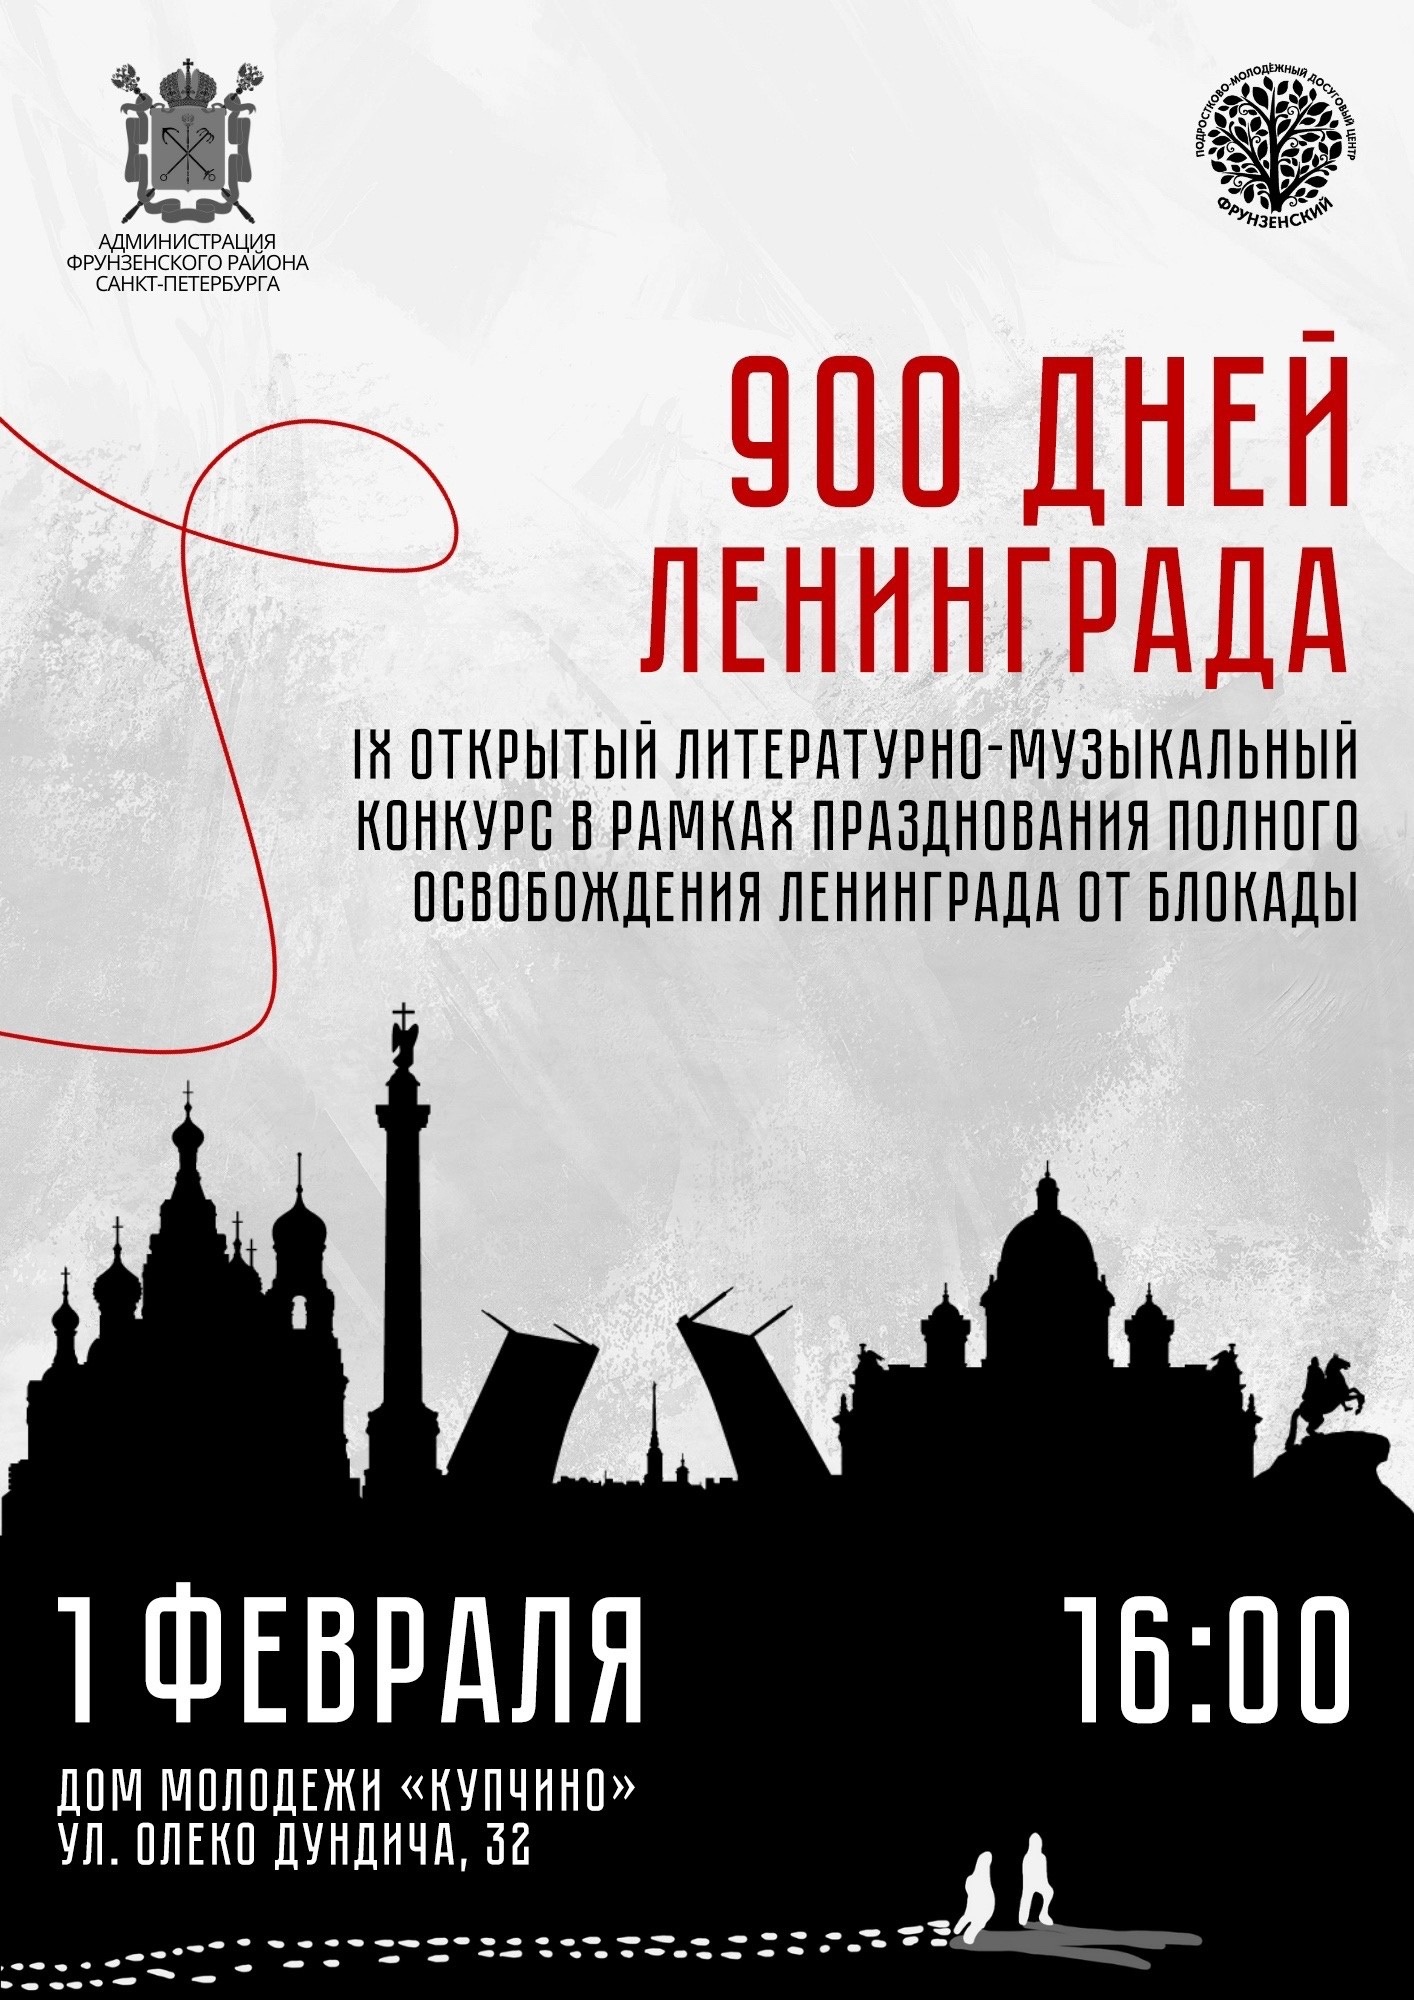 Состоялся Гала-концерт IХ Открытого литературно-музыкального конкурса «900 дней Ленинграда»!